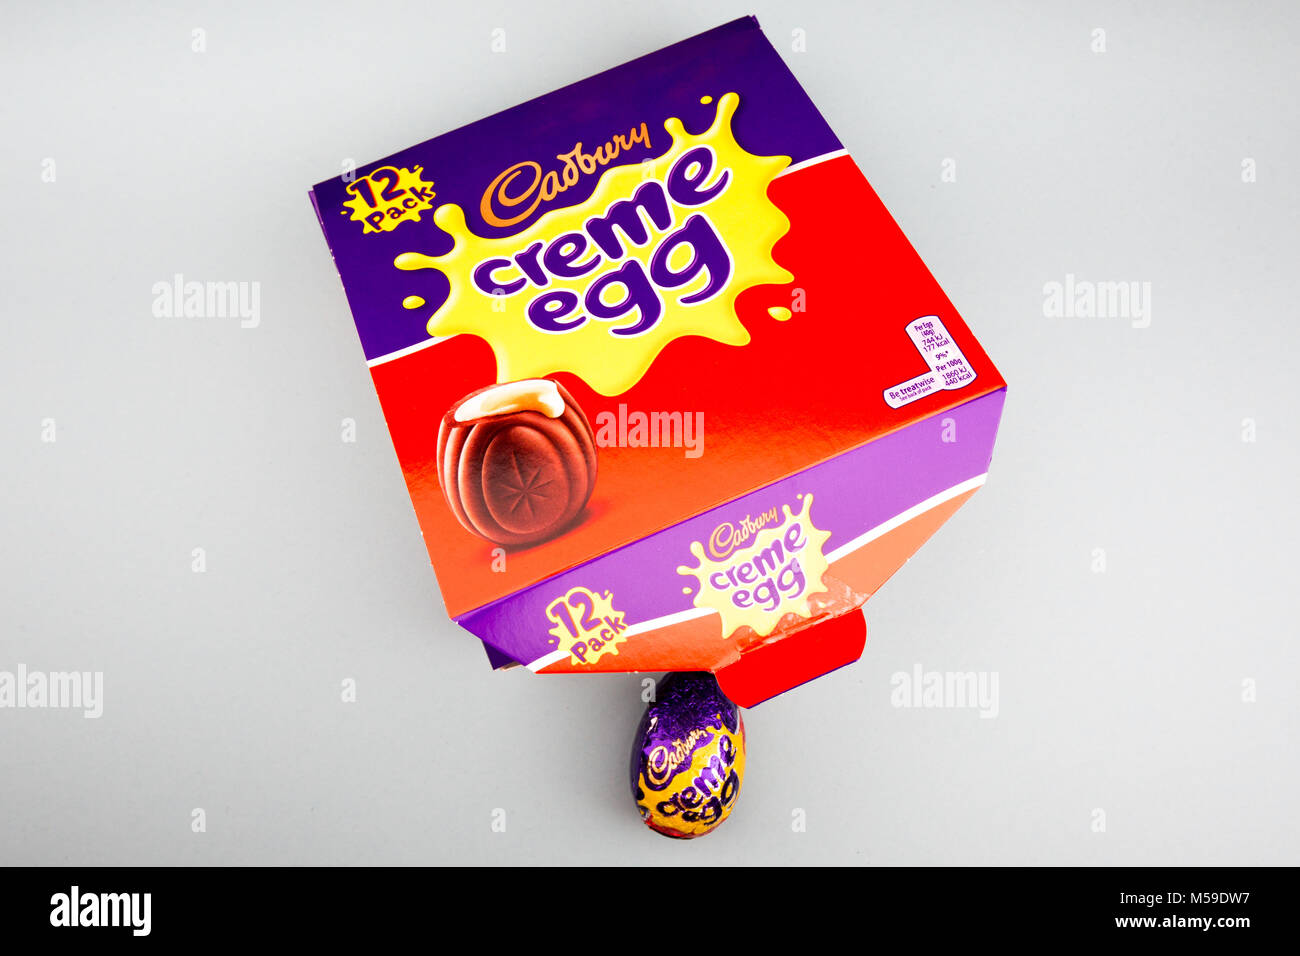 Une boîte d'œufs Cadbury creme Banque D'Images